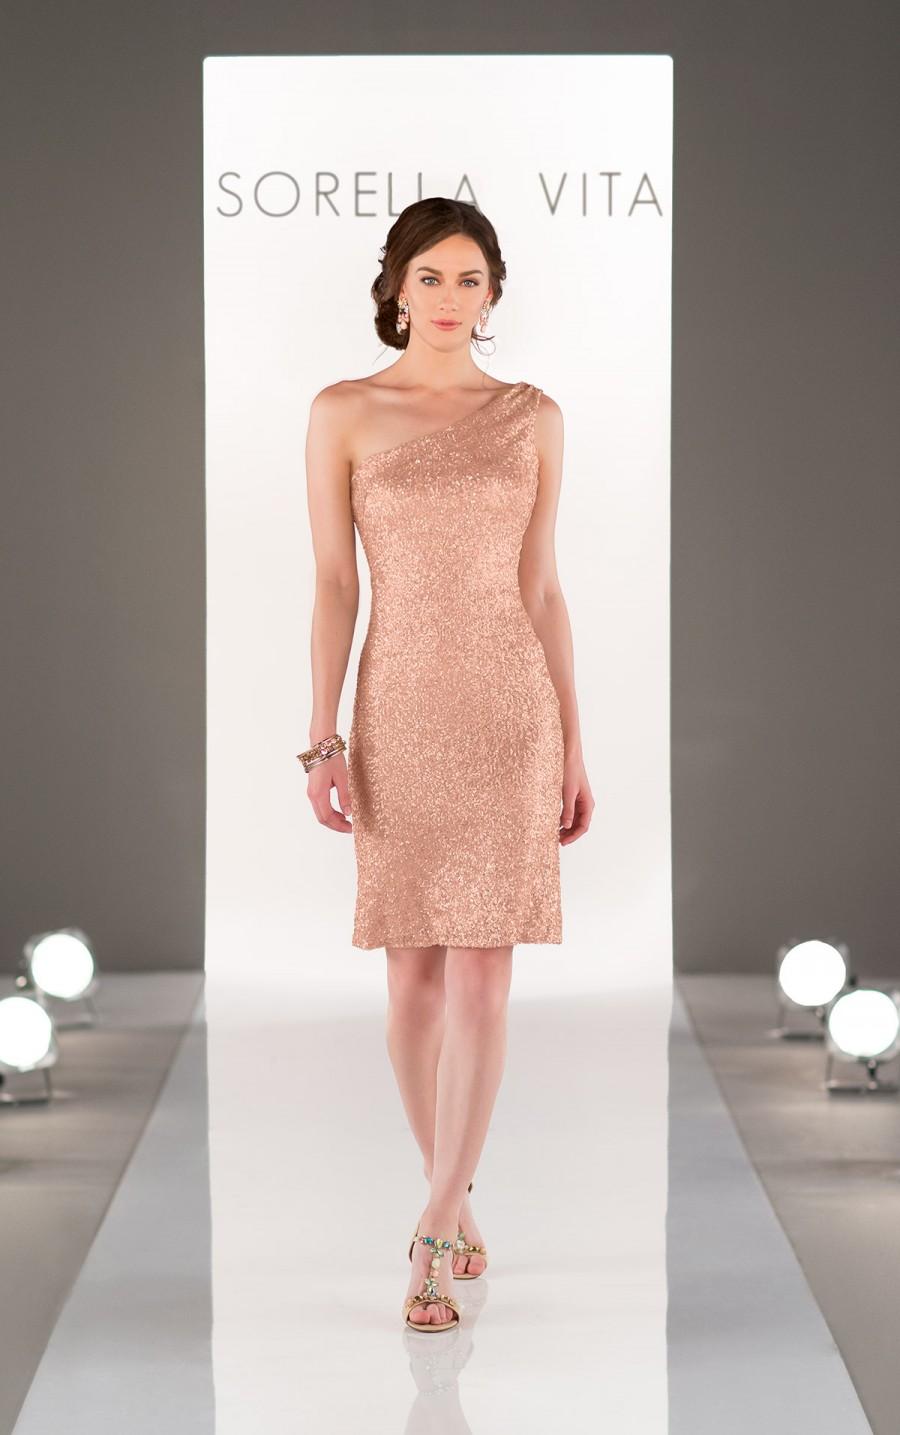 زفاف - Sorella Vita One-Shoulder Sequin Bridesmaid Dress Style 8725